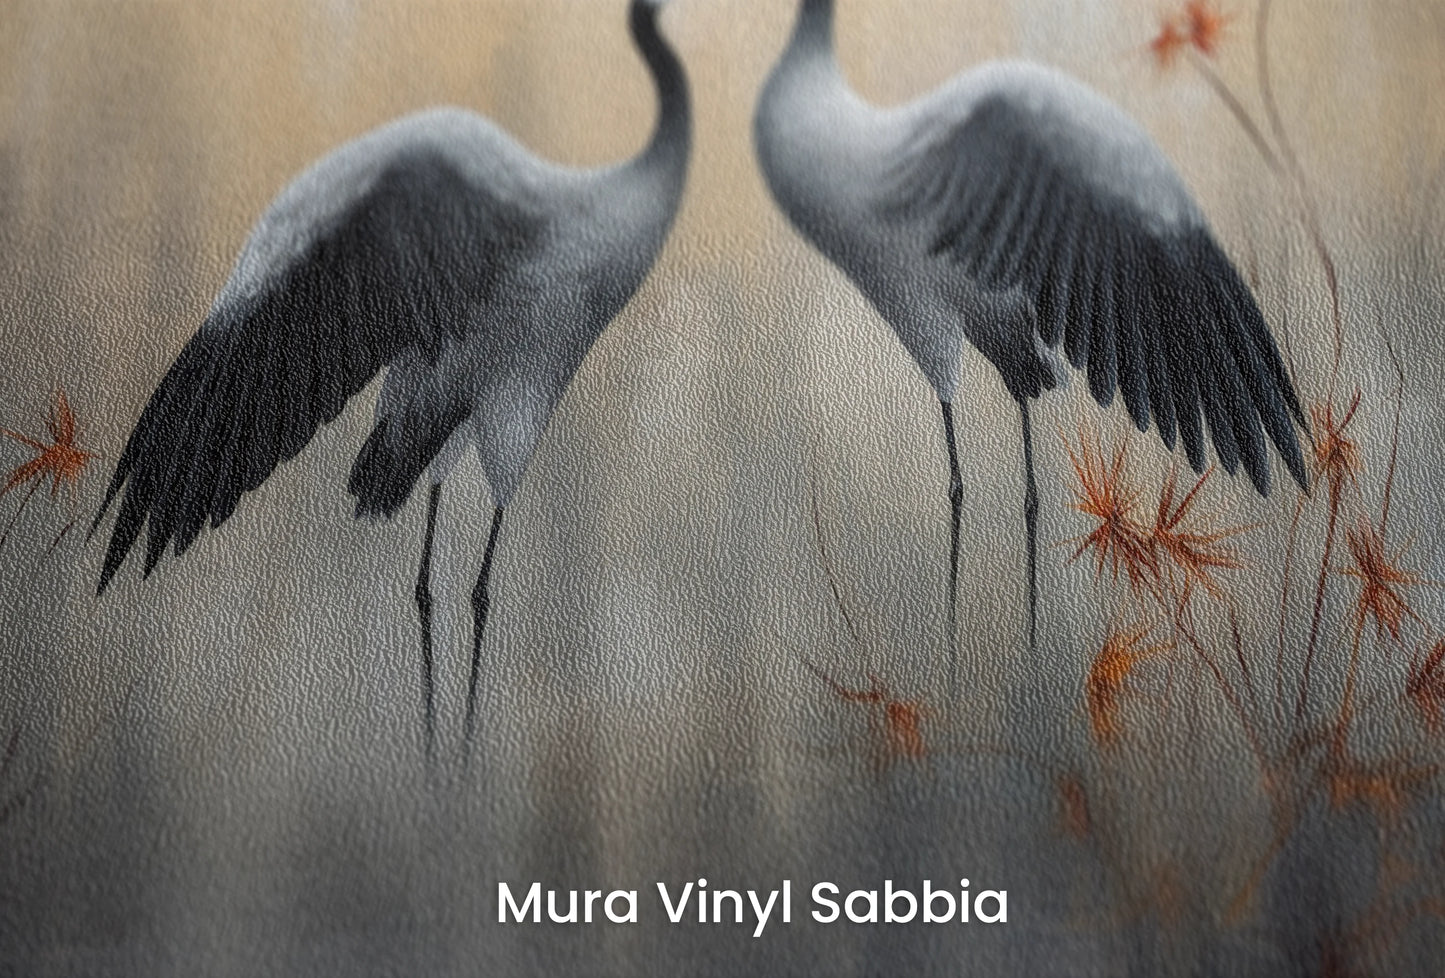 Zbliżenie na artystyczną fototapetę o nazwie Fiery Flight na podłożu Mura Vinyl Sabbia struktura grubego ziarna piasku.